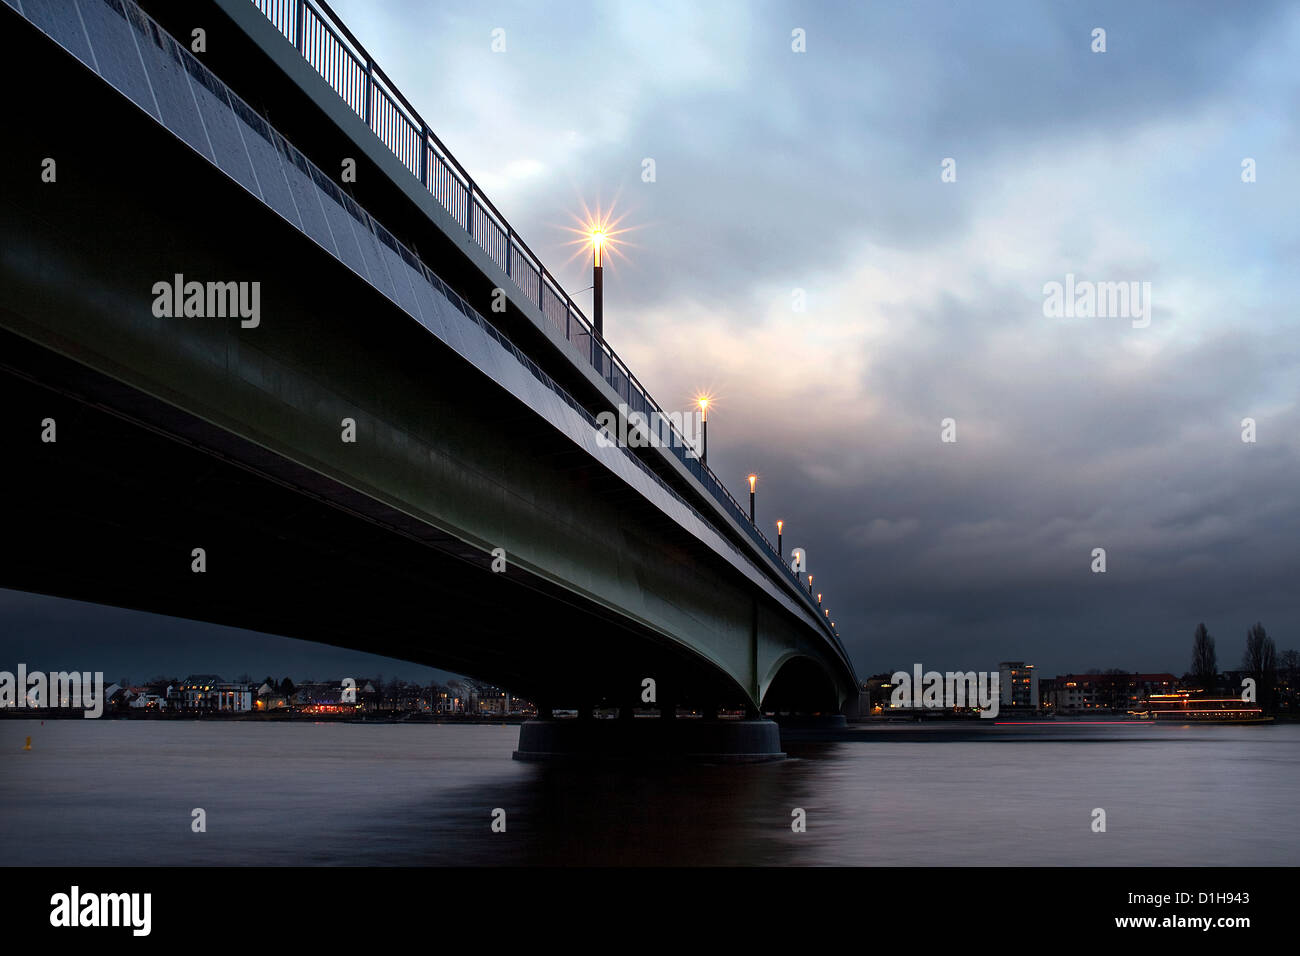 Kennedybrücke nella città di Bonn, a mezzo ponte dei tre ponti dell'ex capitale della Germania - riva sinistra Foto Stock